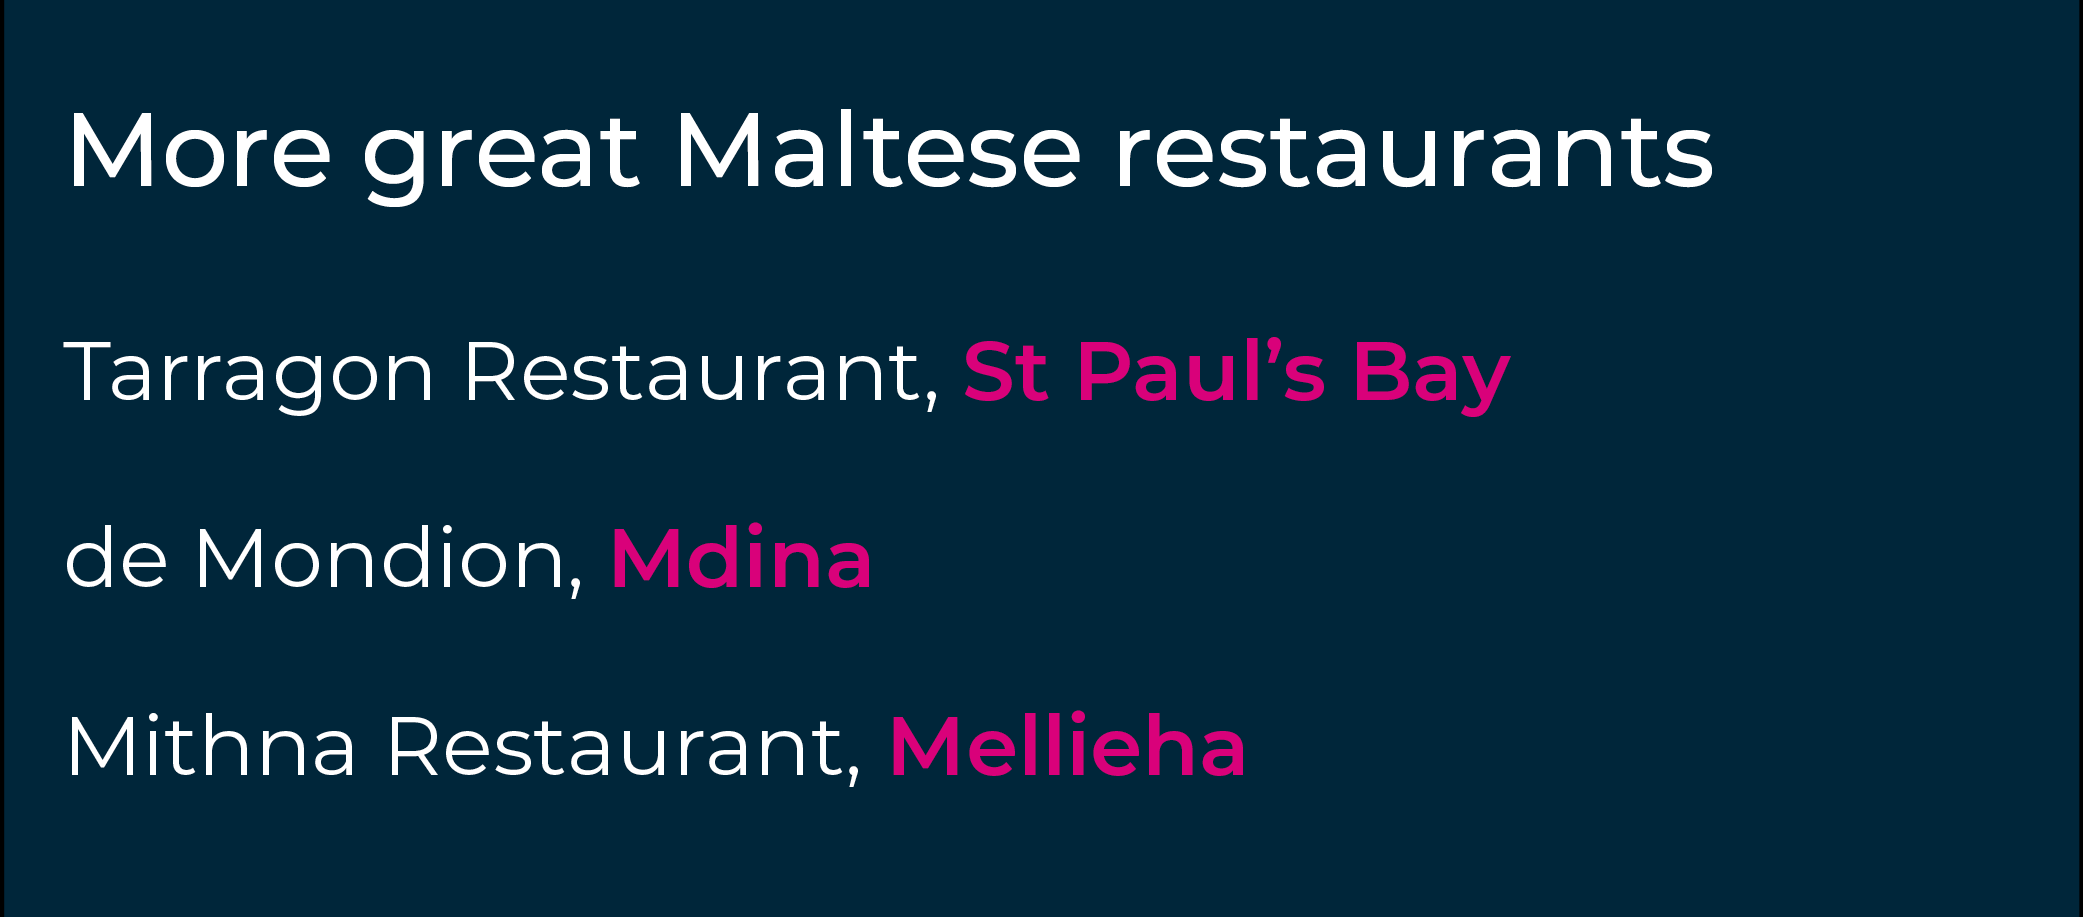 هل طورت ذوقا للمطاعم التي يجب تجربتها في مالطا؟